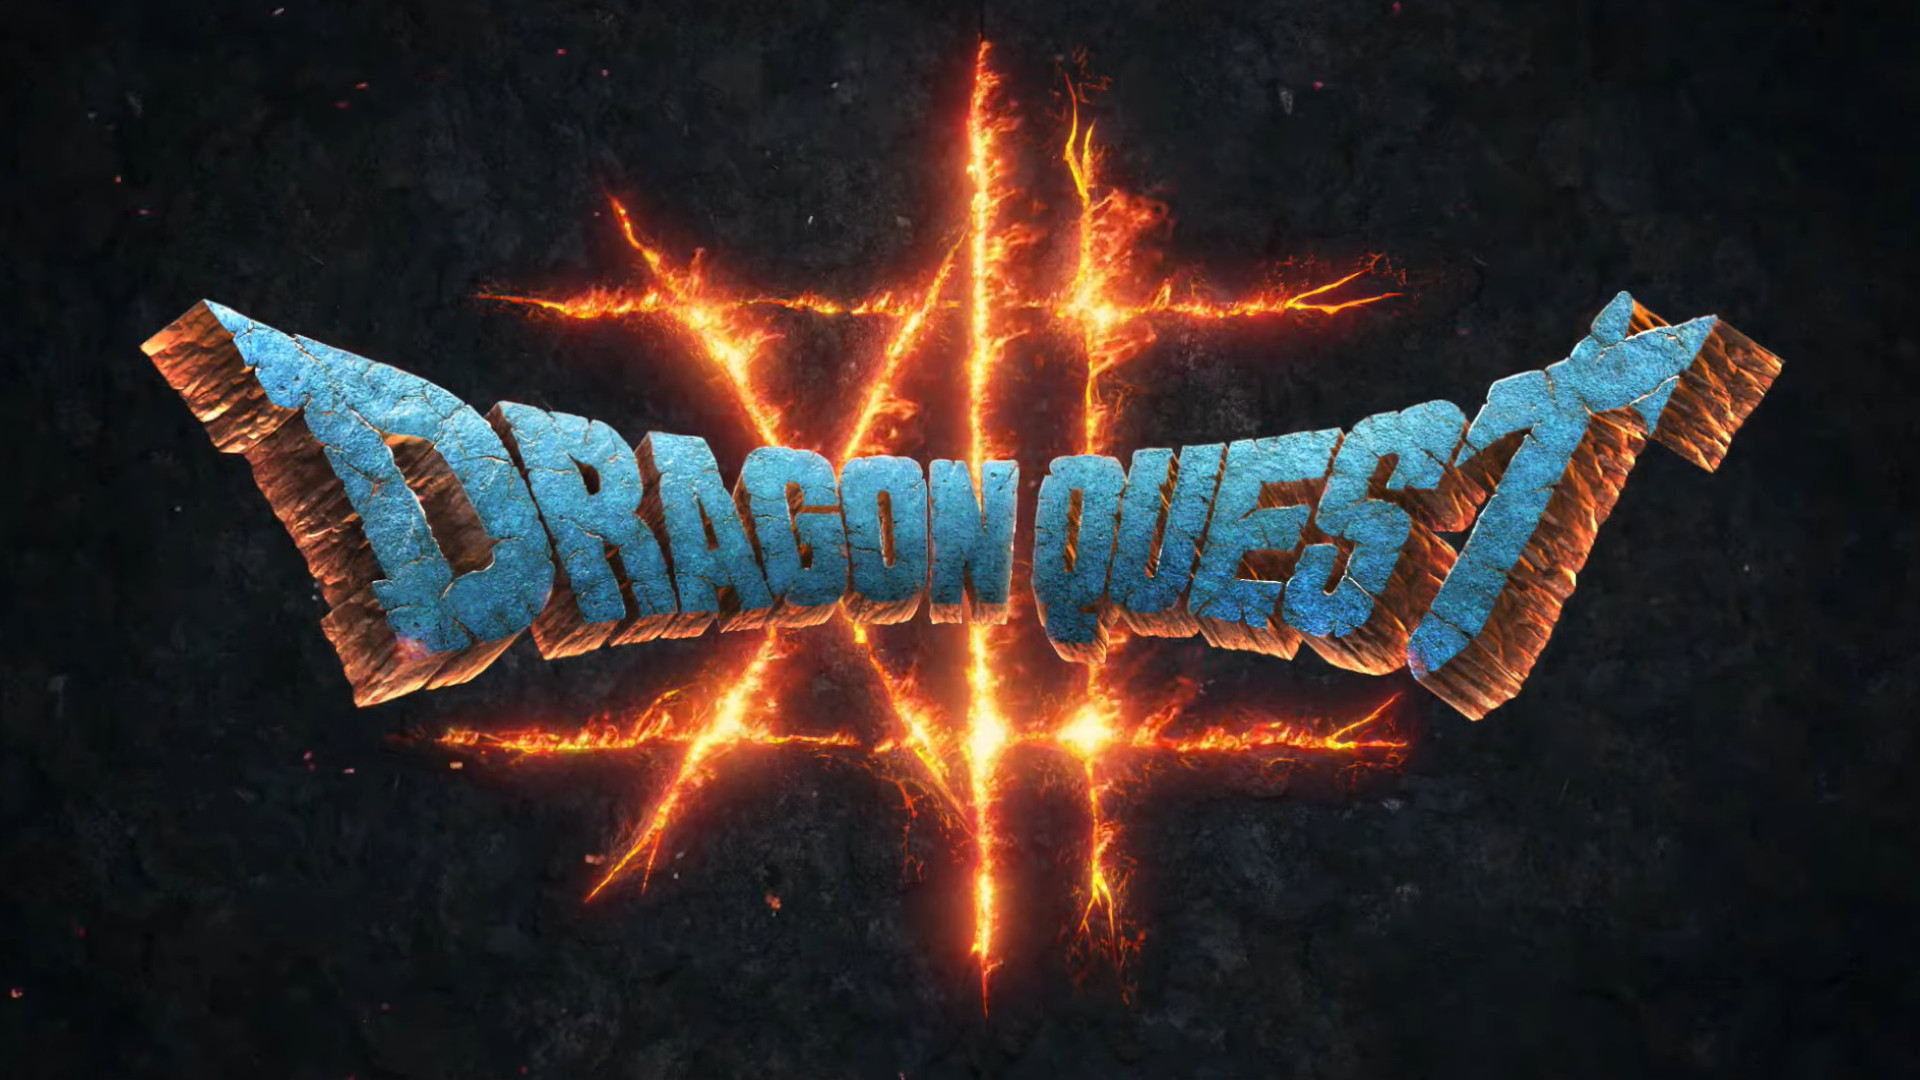 dragon-quest-12-announcement-1.jpg